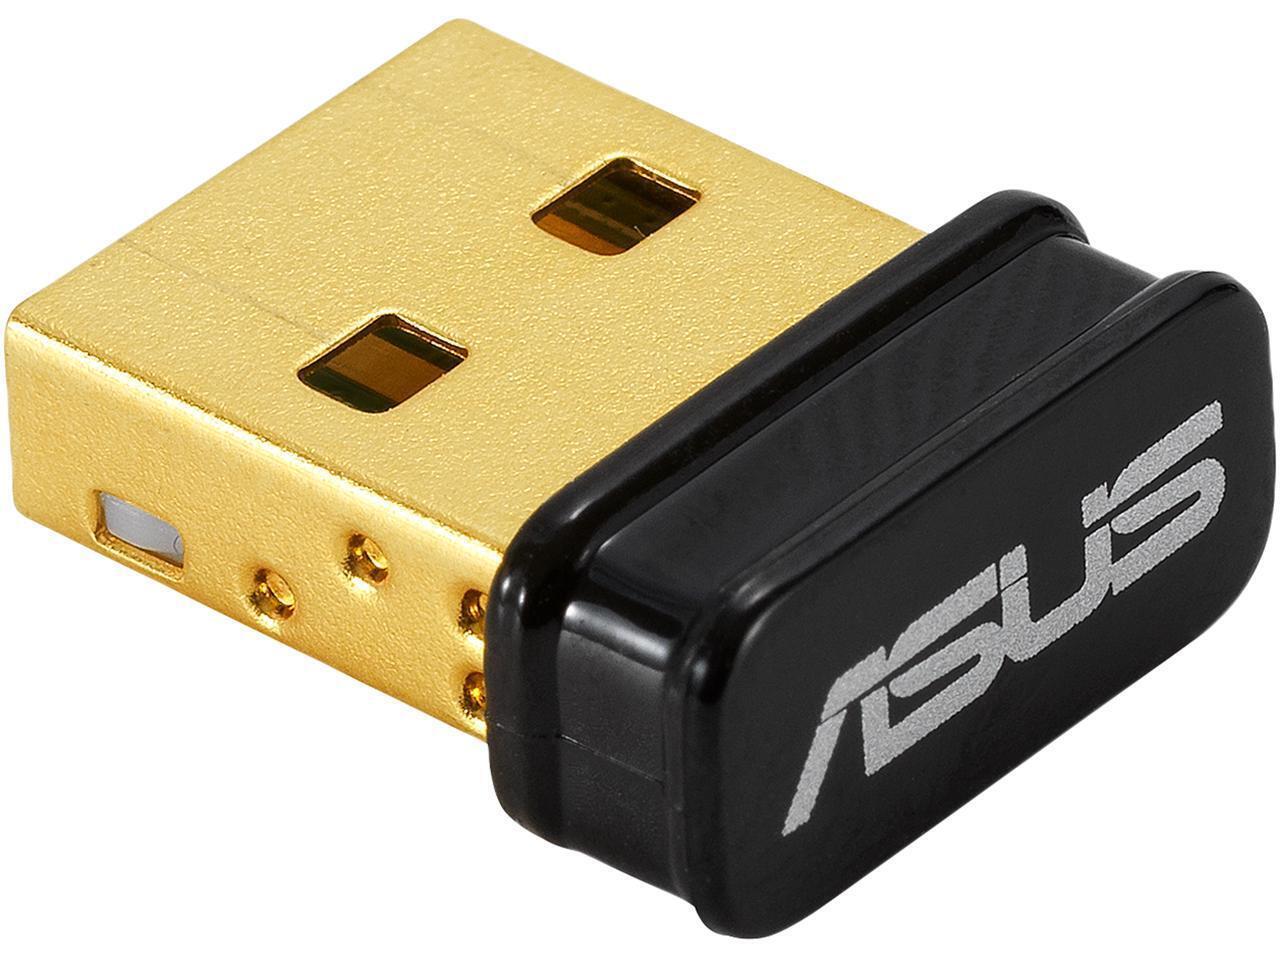 ASUS USB-BT500 Bluetooth 5.0 USB Adapter Wireless Adapter USB-WIFI